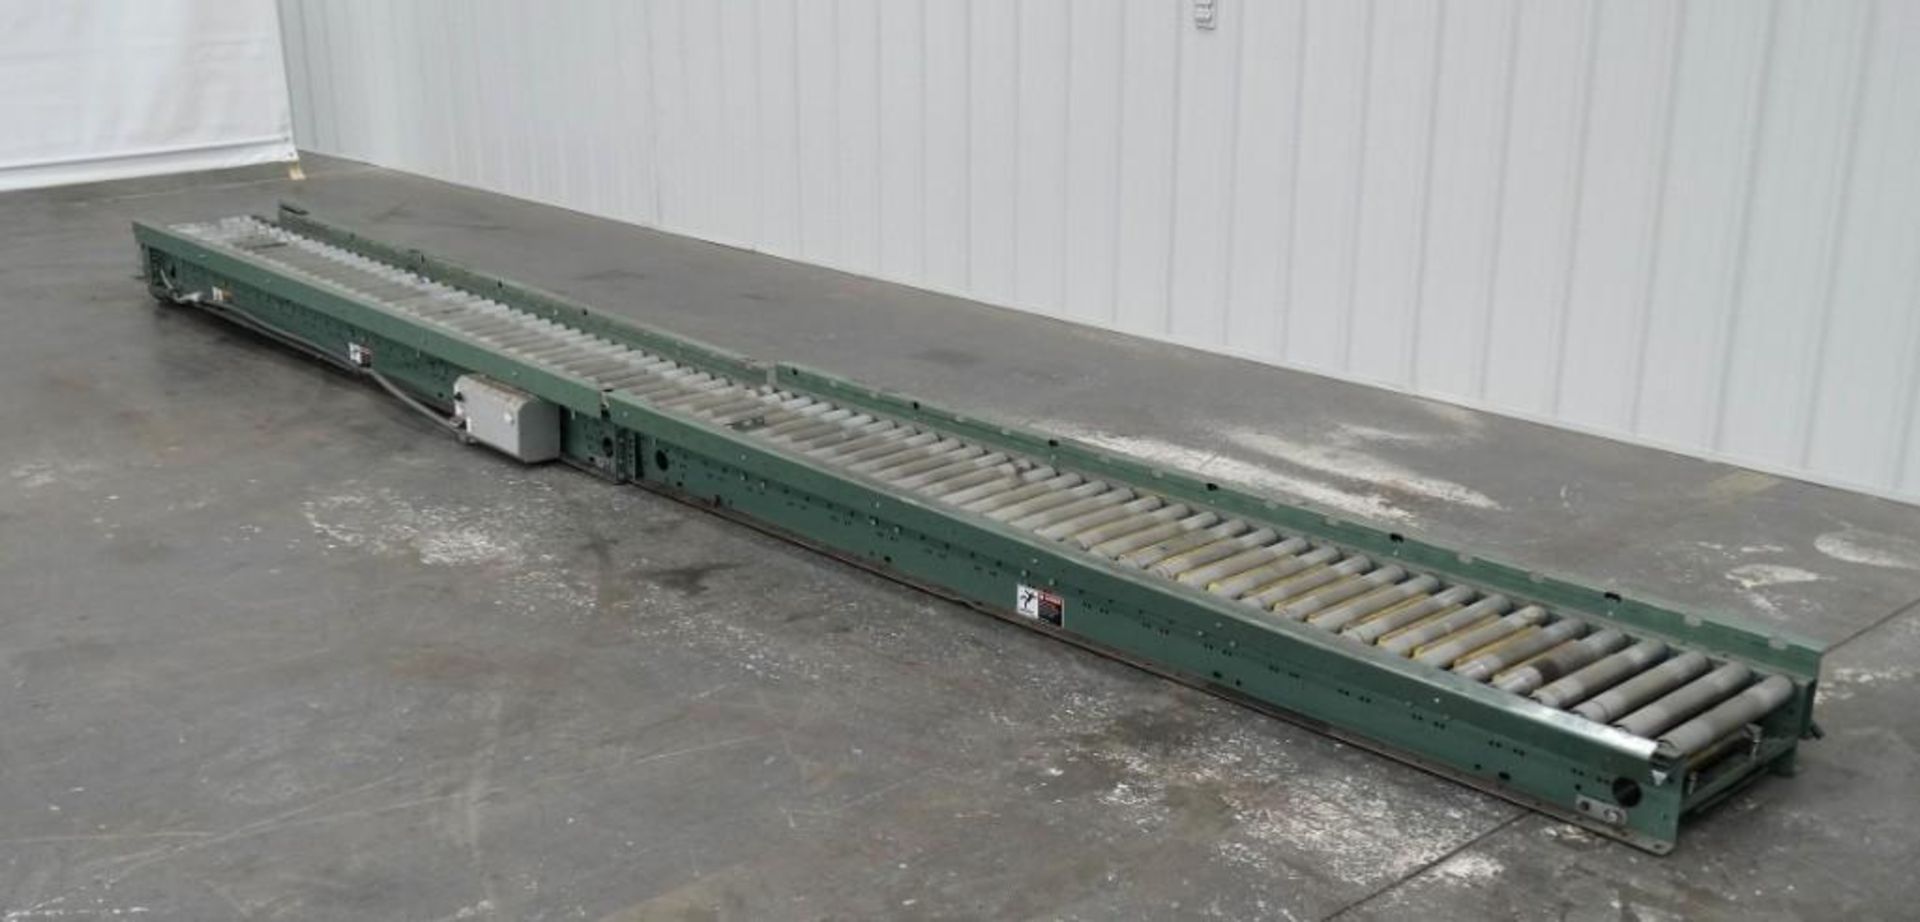 Hytrol 15" Wide x 223" Long Roller Conveyor